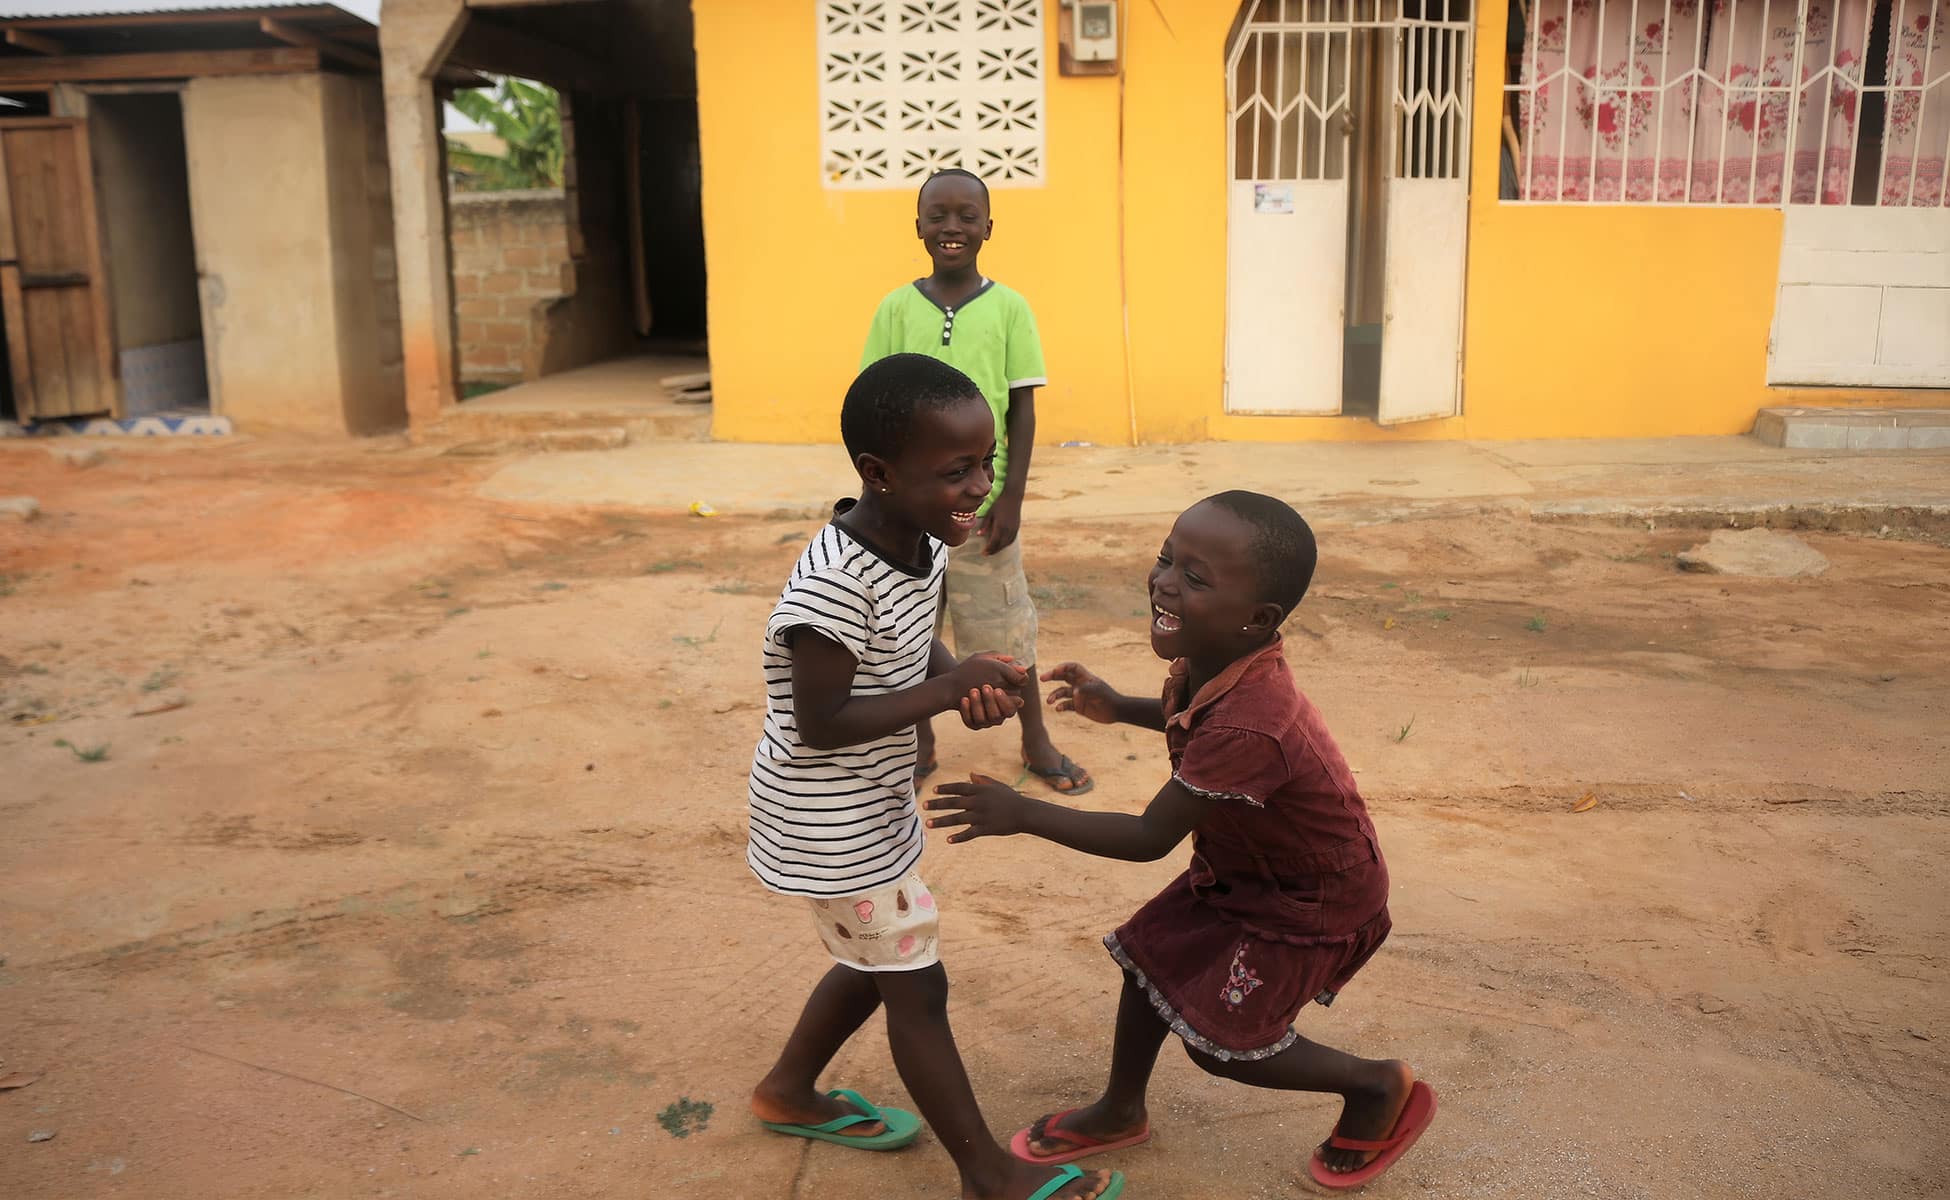 To barn fra Ghana, ei jente med kort hår, stripete t-skjorte, mønstrete shorts og grønne slippers, den andre med kort hår, rød kjole og røde slippers, ser mot hverandre og ler. I bakgrunnen står en gutt med grønn t-skjorte og kaki shorts. De står midt i ei gate med lys leire, i bakgrunnen en gul vegg. Foto: SOS-barnebyer